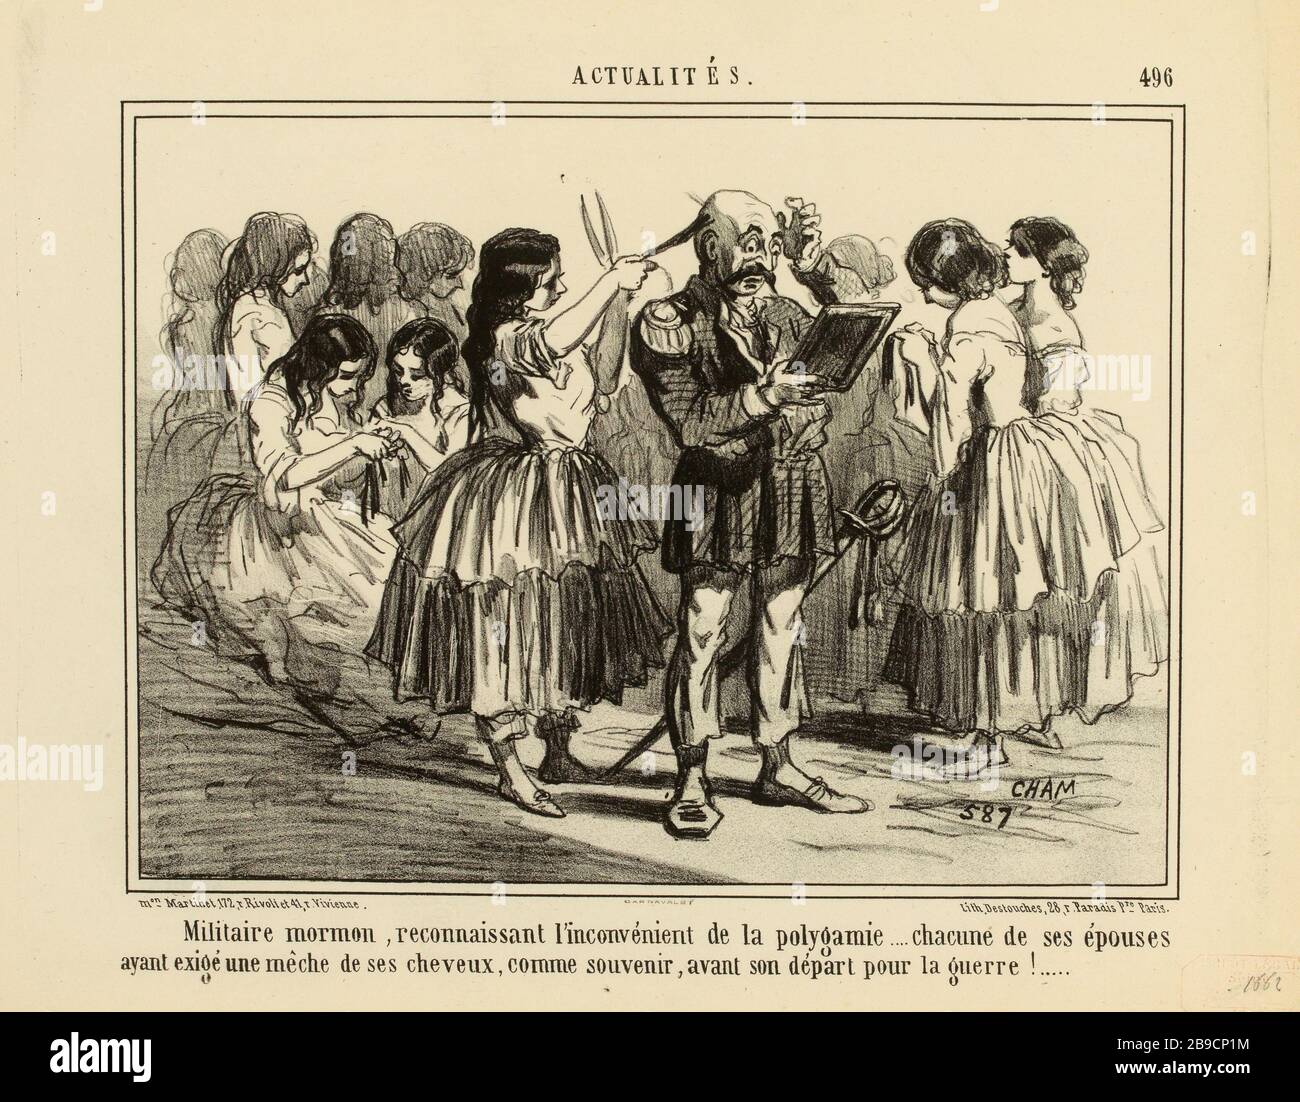 Mormon militaire, reconnaissant le désagrément de la polygamie ... [...]. / 496 (titre enregistré) | Nouvelles (sous tout). Banque D'Images